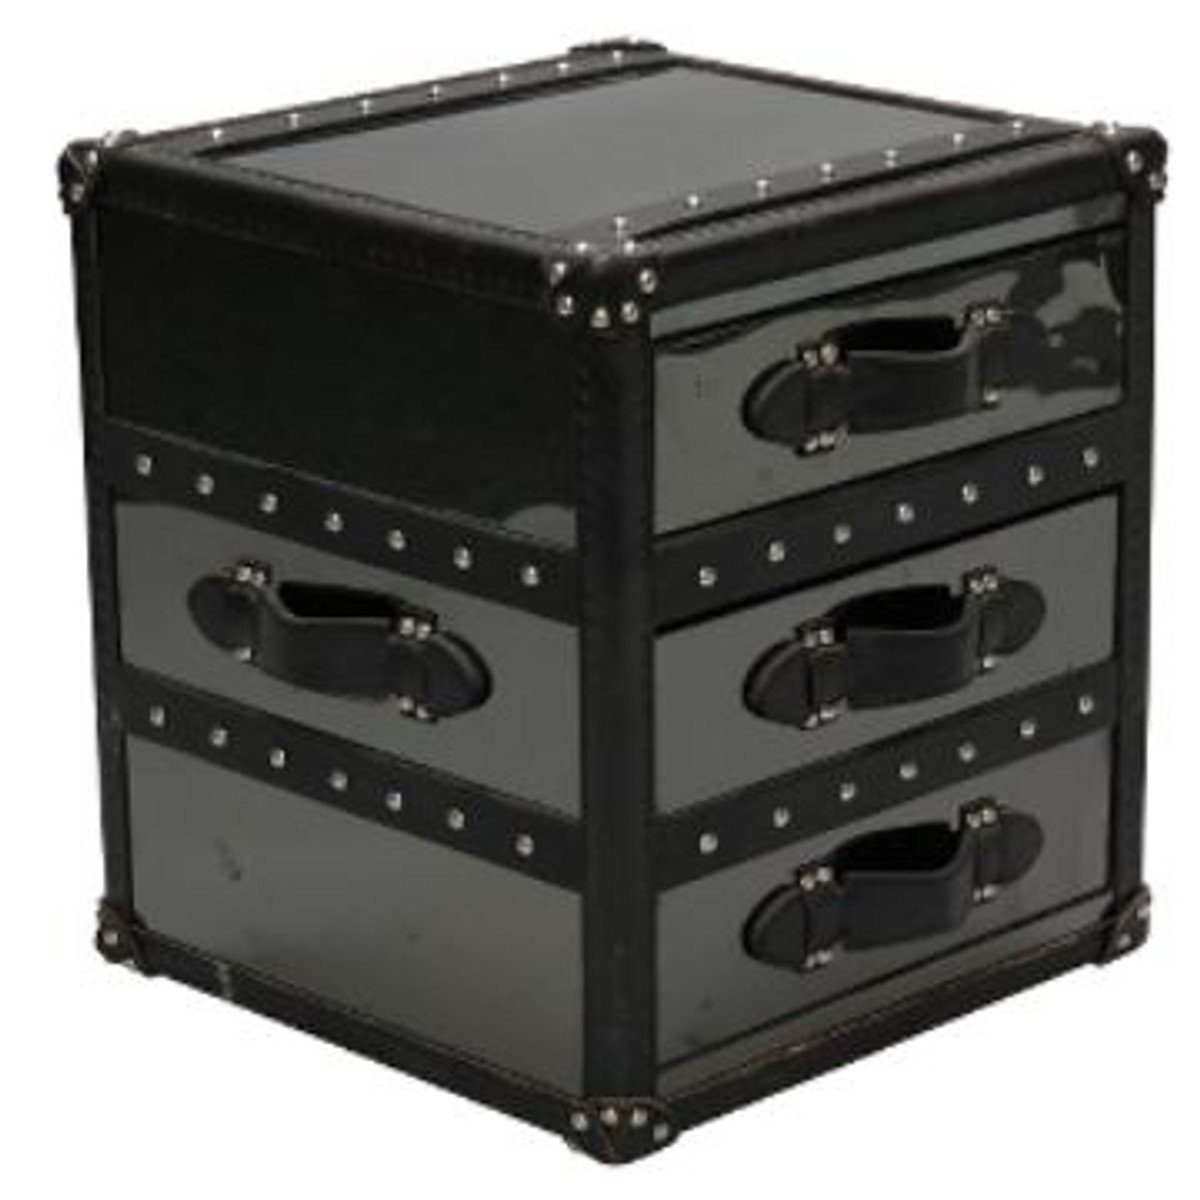 Casa Padrino Beistelltisch Luxus Beistelltisch mit 2 Schubladen Schwarz 52 x 48 x H. 50 cm - Handgefertigter Beistelltisch im Kofferlook